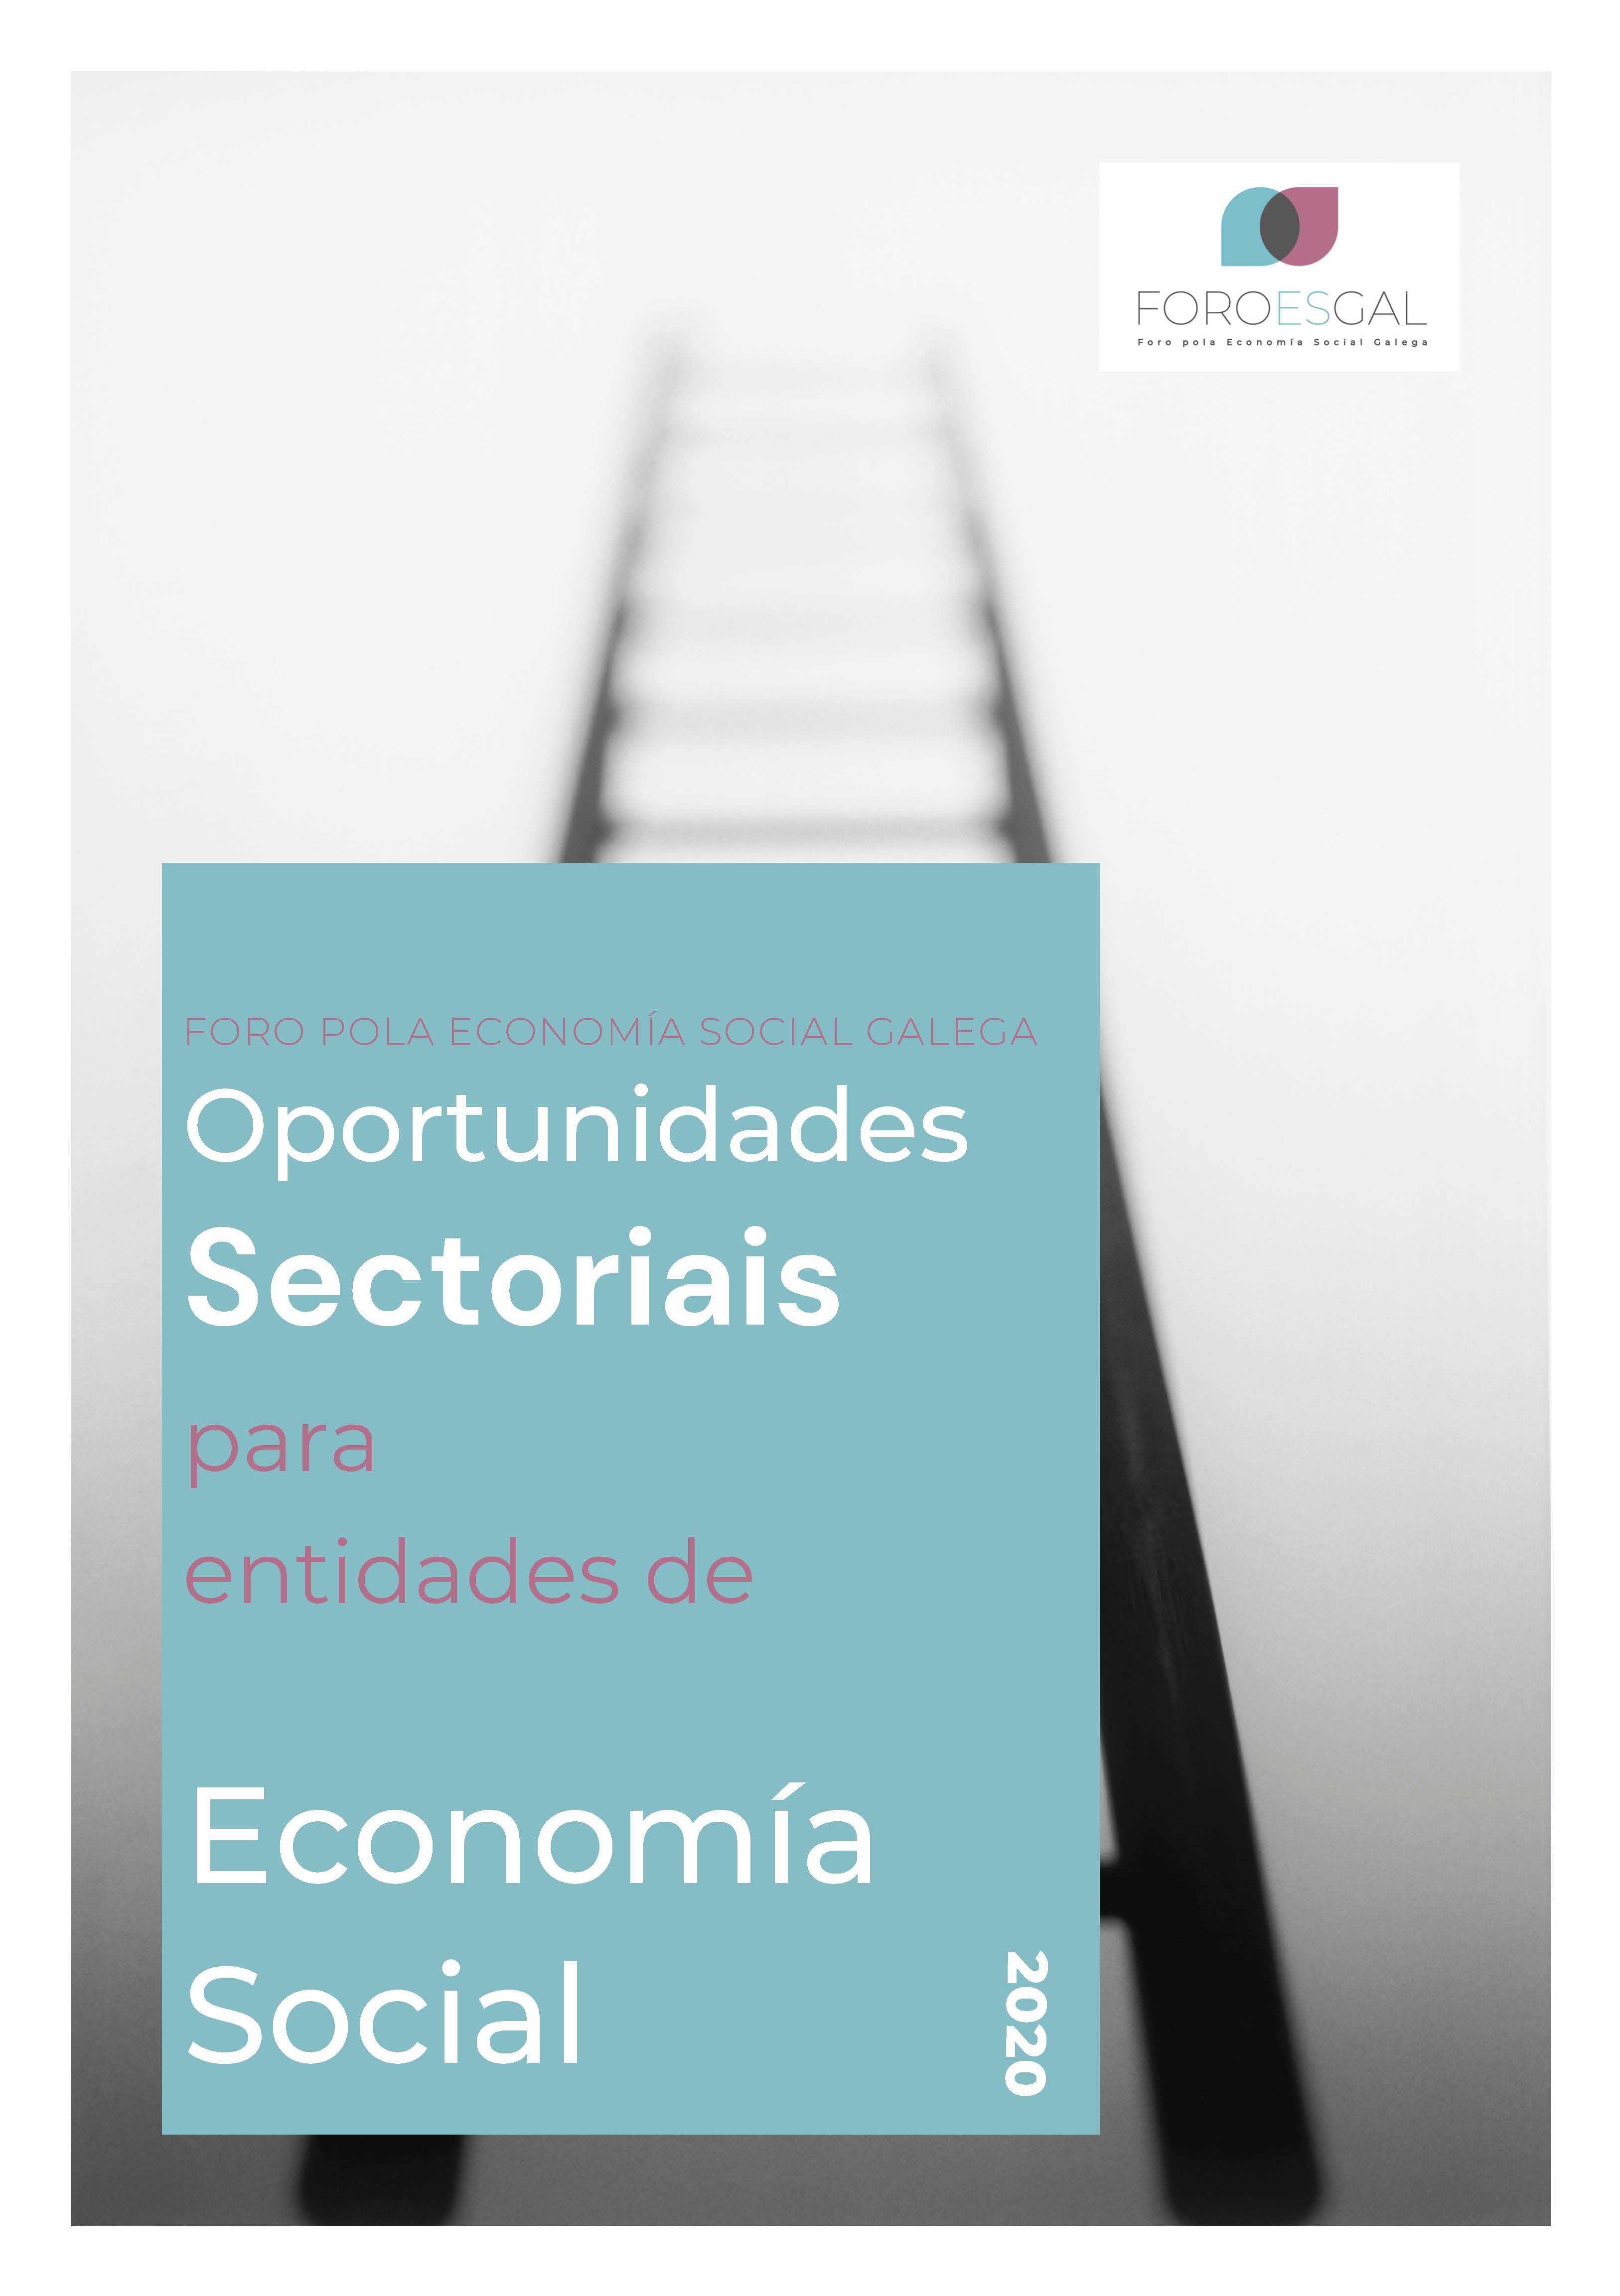 Oportunidades Sectoriais FOROESGAL 2020